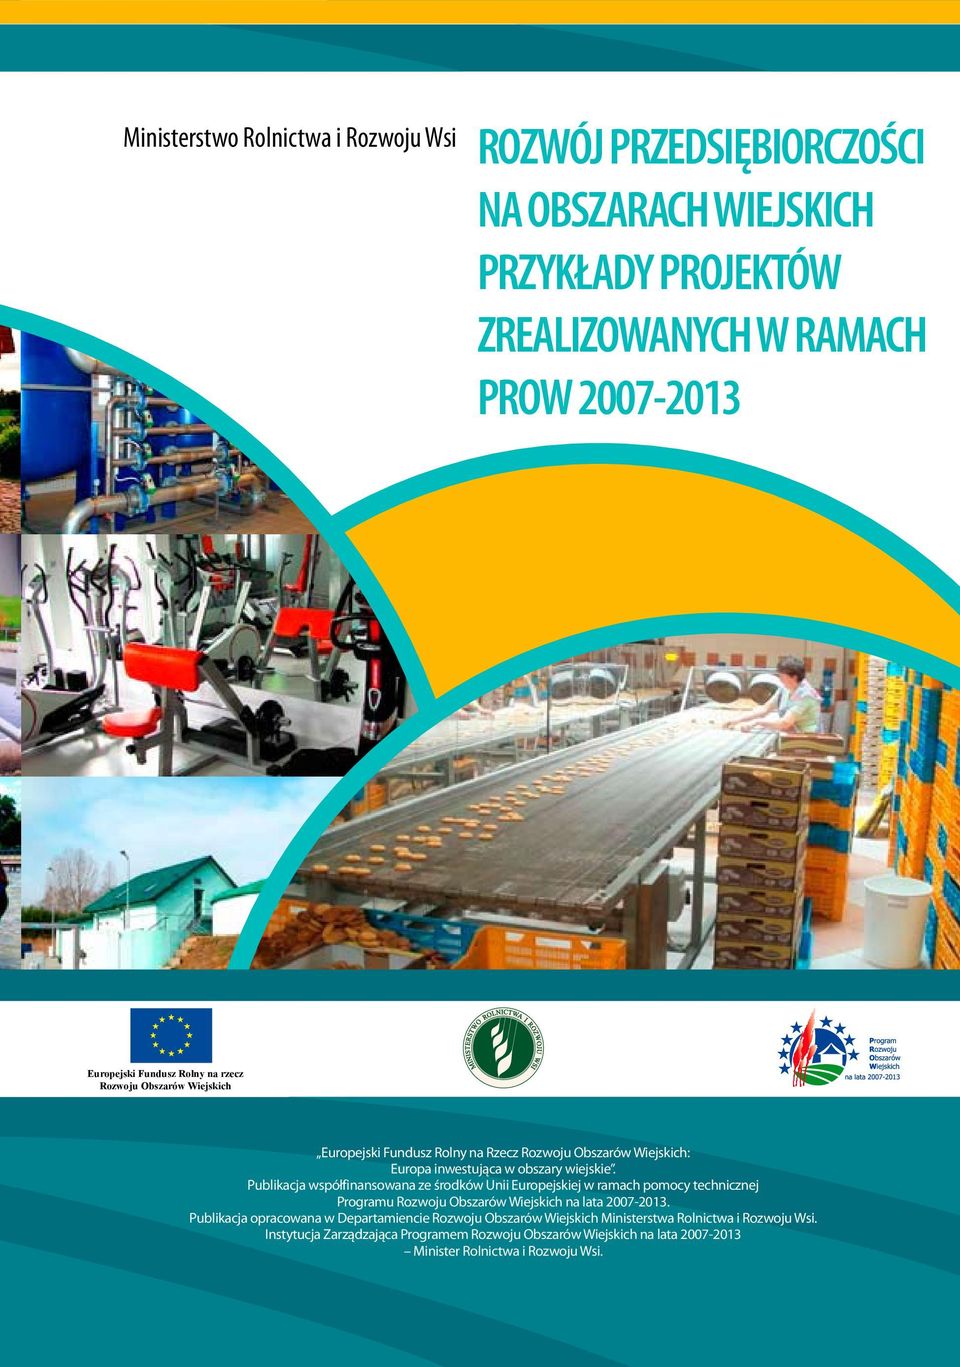 Publikacja współfinansowana ze środków Unii Europejskiej w ramach pomocy technicznej Programu Rozwoju Obszarów Wiejskich na lata 2007-2013.